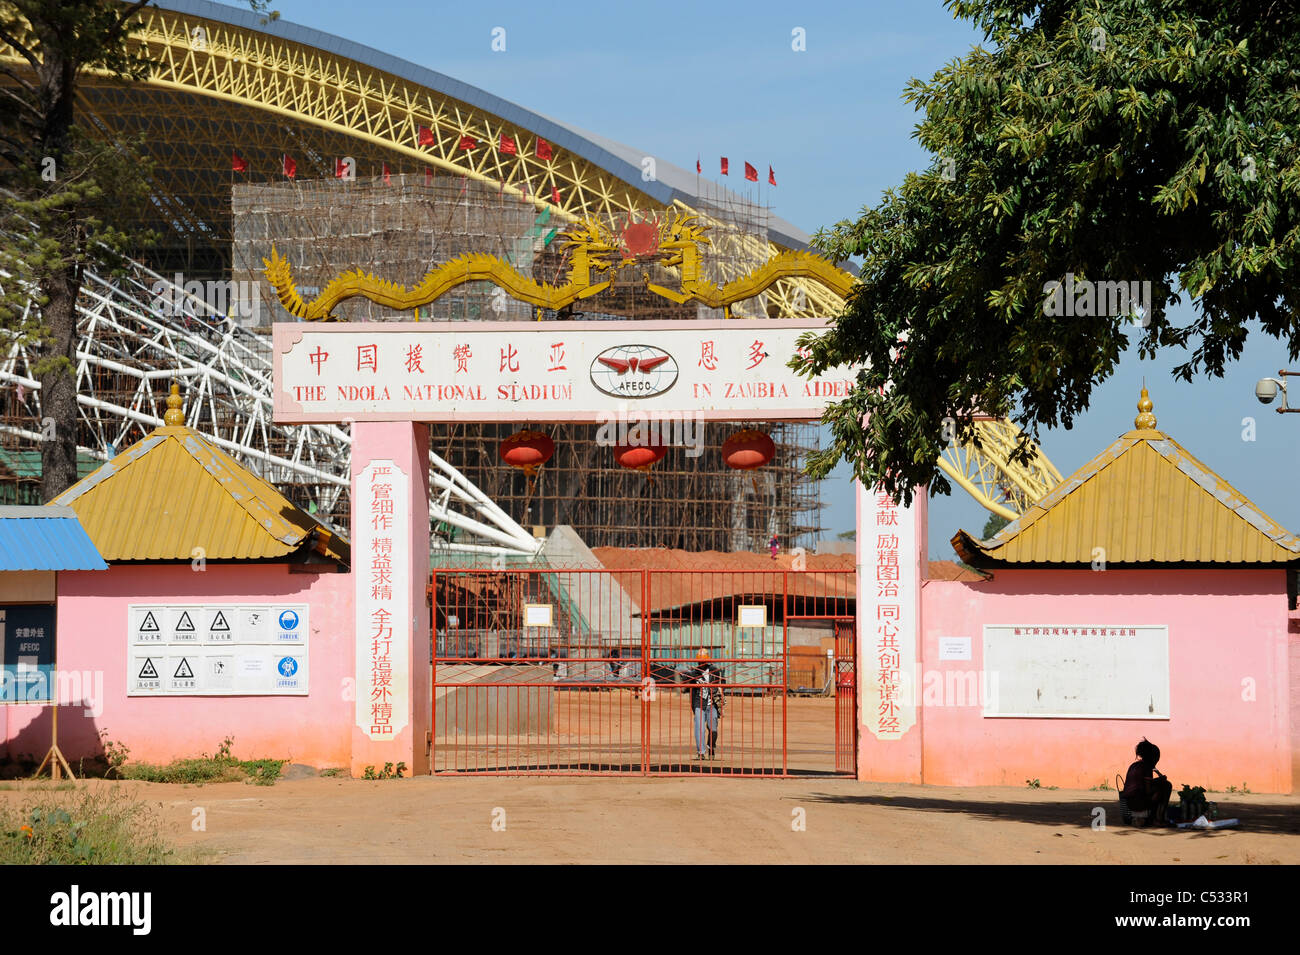 ZAMBIA Ndola, AFECC copperbelt, einem chinesischen Unternehmen schaffen ein neues Fußball-Stadion, verkauft als Geschenk und win win aus China, Kupfer ist in der Nähe von Stockfoto